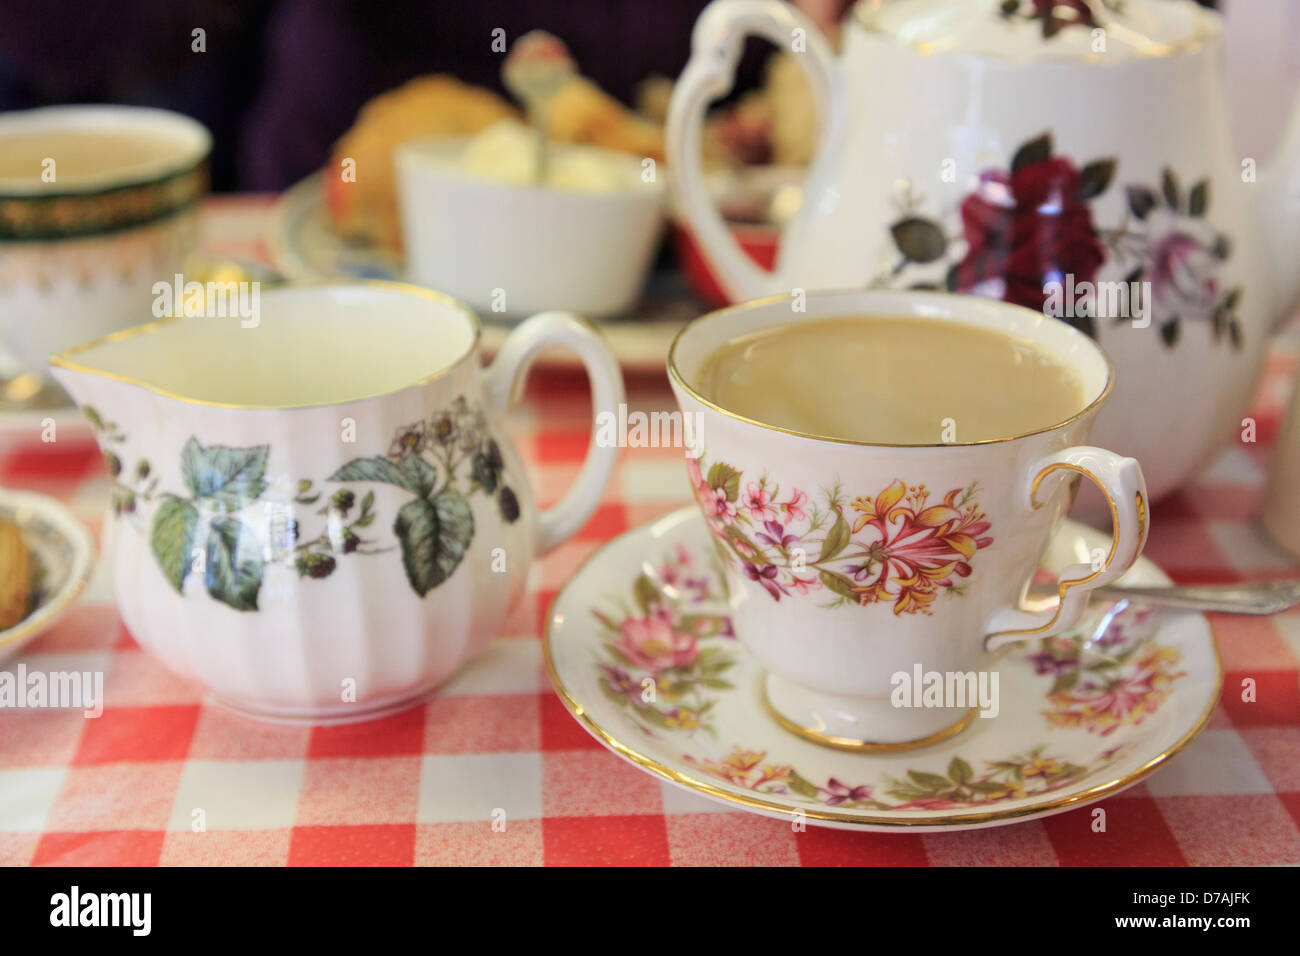 Le thé anglais traditionnel avec service tasse et soucoupe chine fleuri sur une nappe blanche et rouge dans un café. Angleterre Royaume-uni Grande-Bretagne Banque D'Images